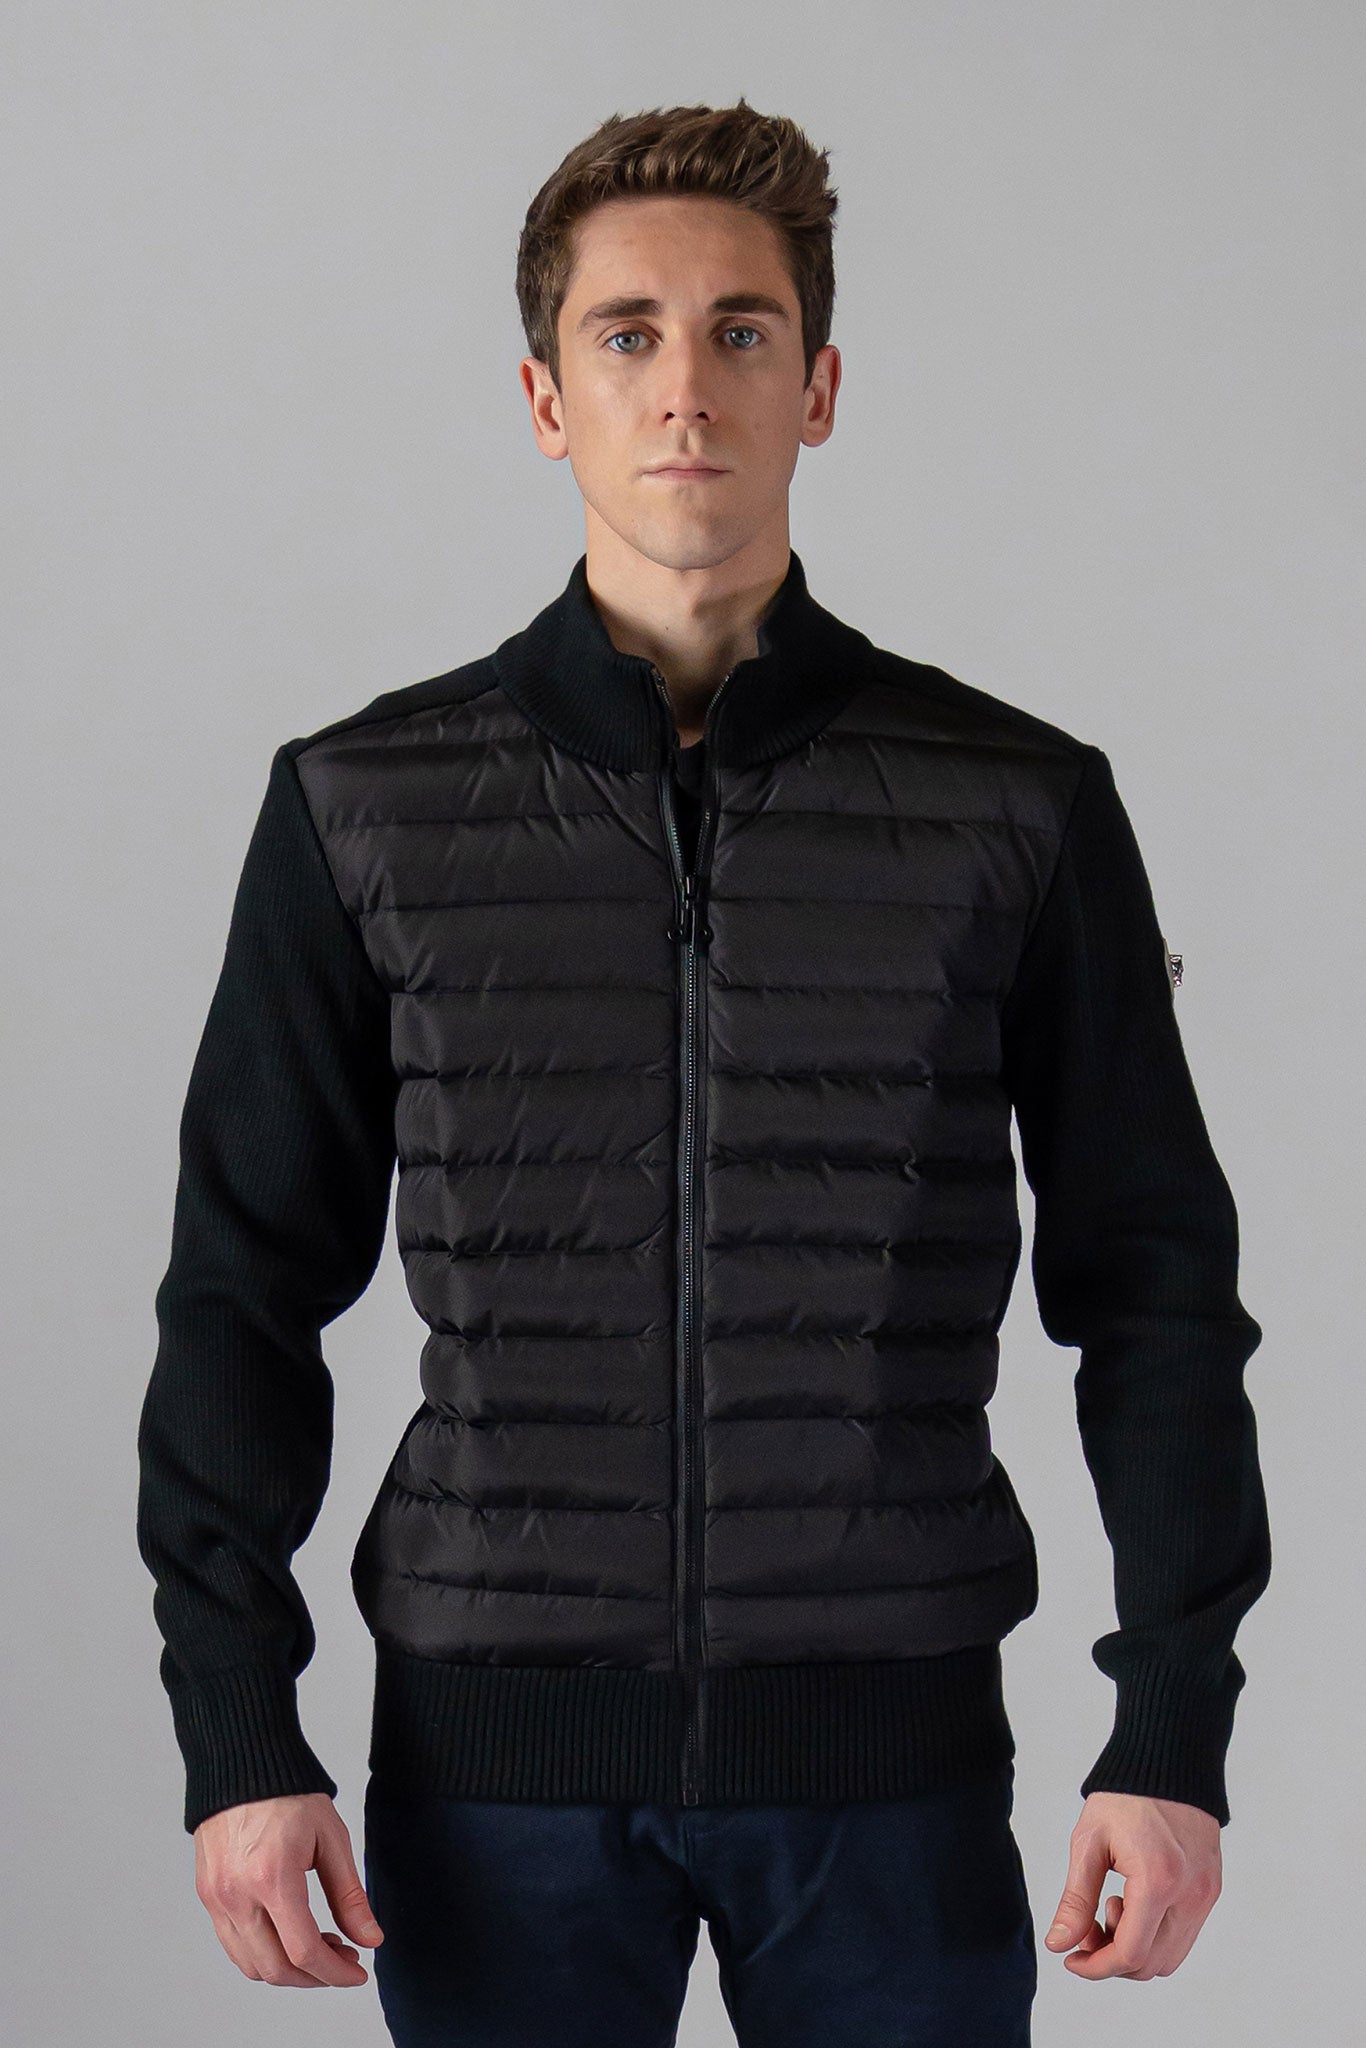 Woodpecker Men's Sweater Vest. High-end Canadian designer sweater vest for men in 